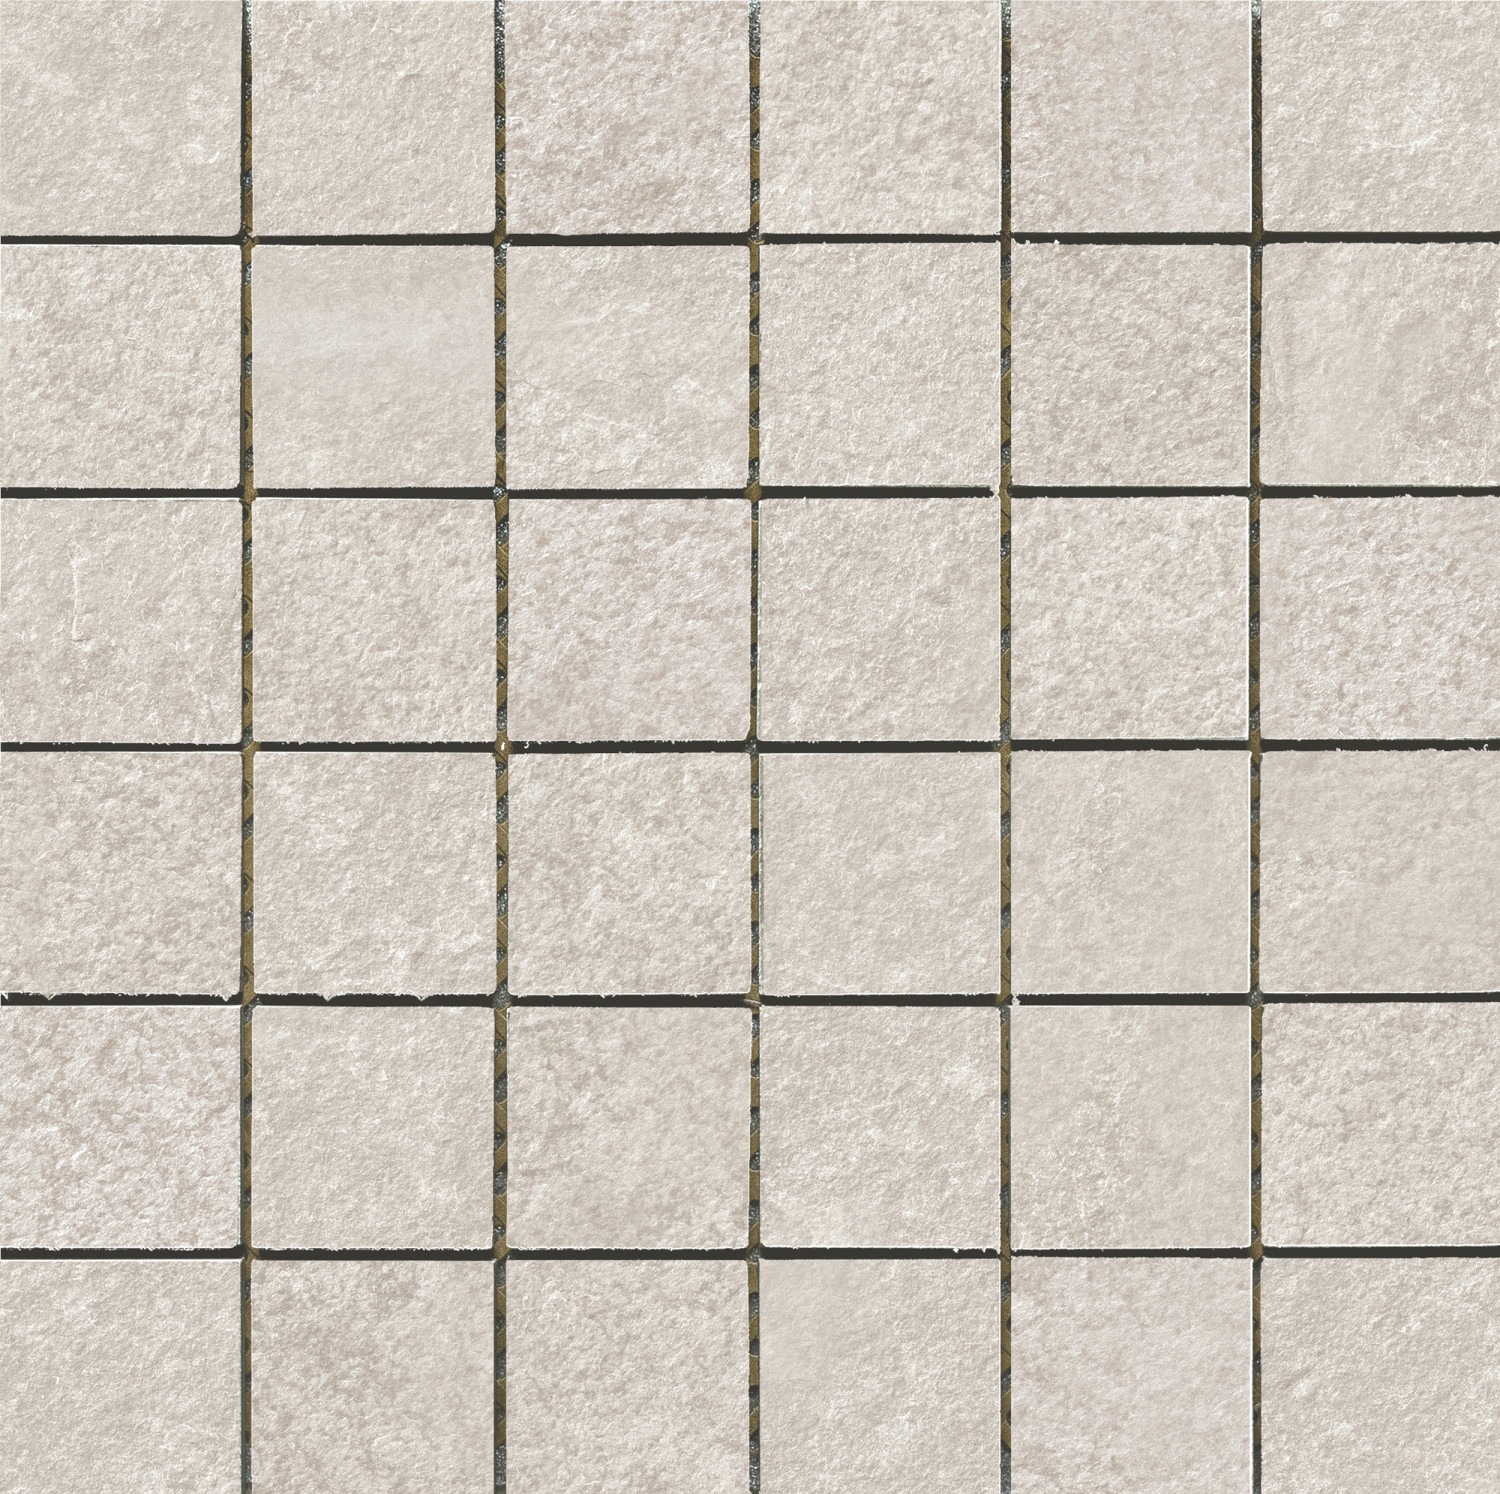 Azulev Basalt Marfil Mosaico 30x30 см